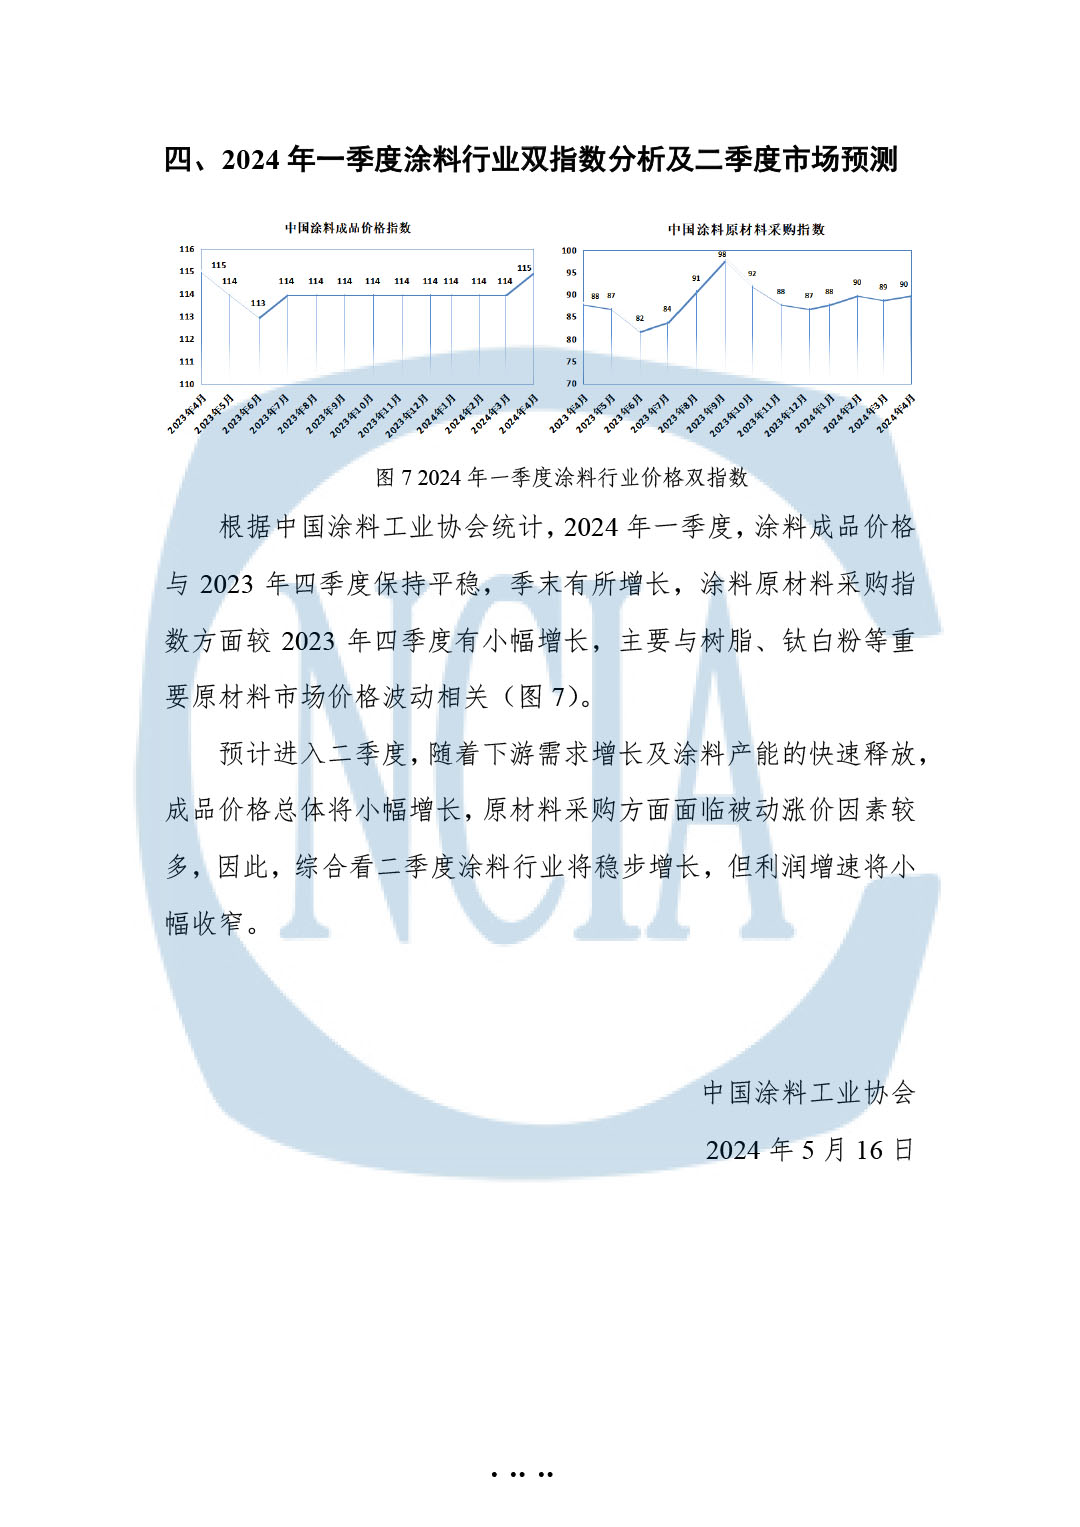 2024年一季度中国涂料、颜料行业经济运行简报-8